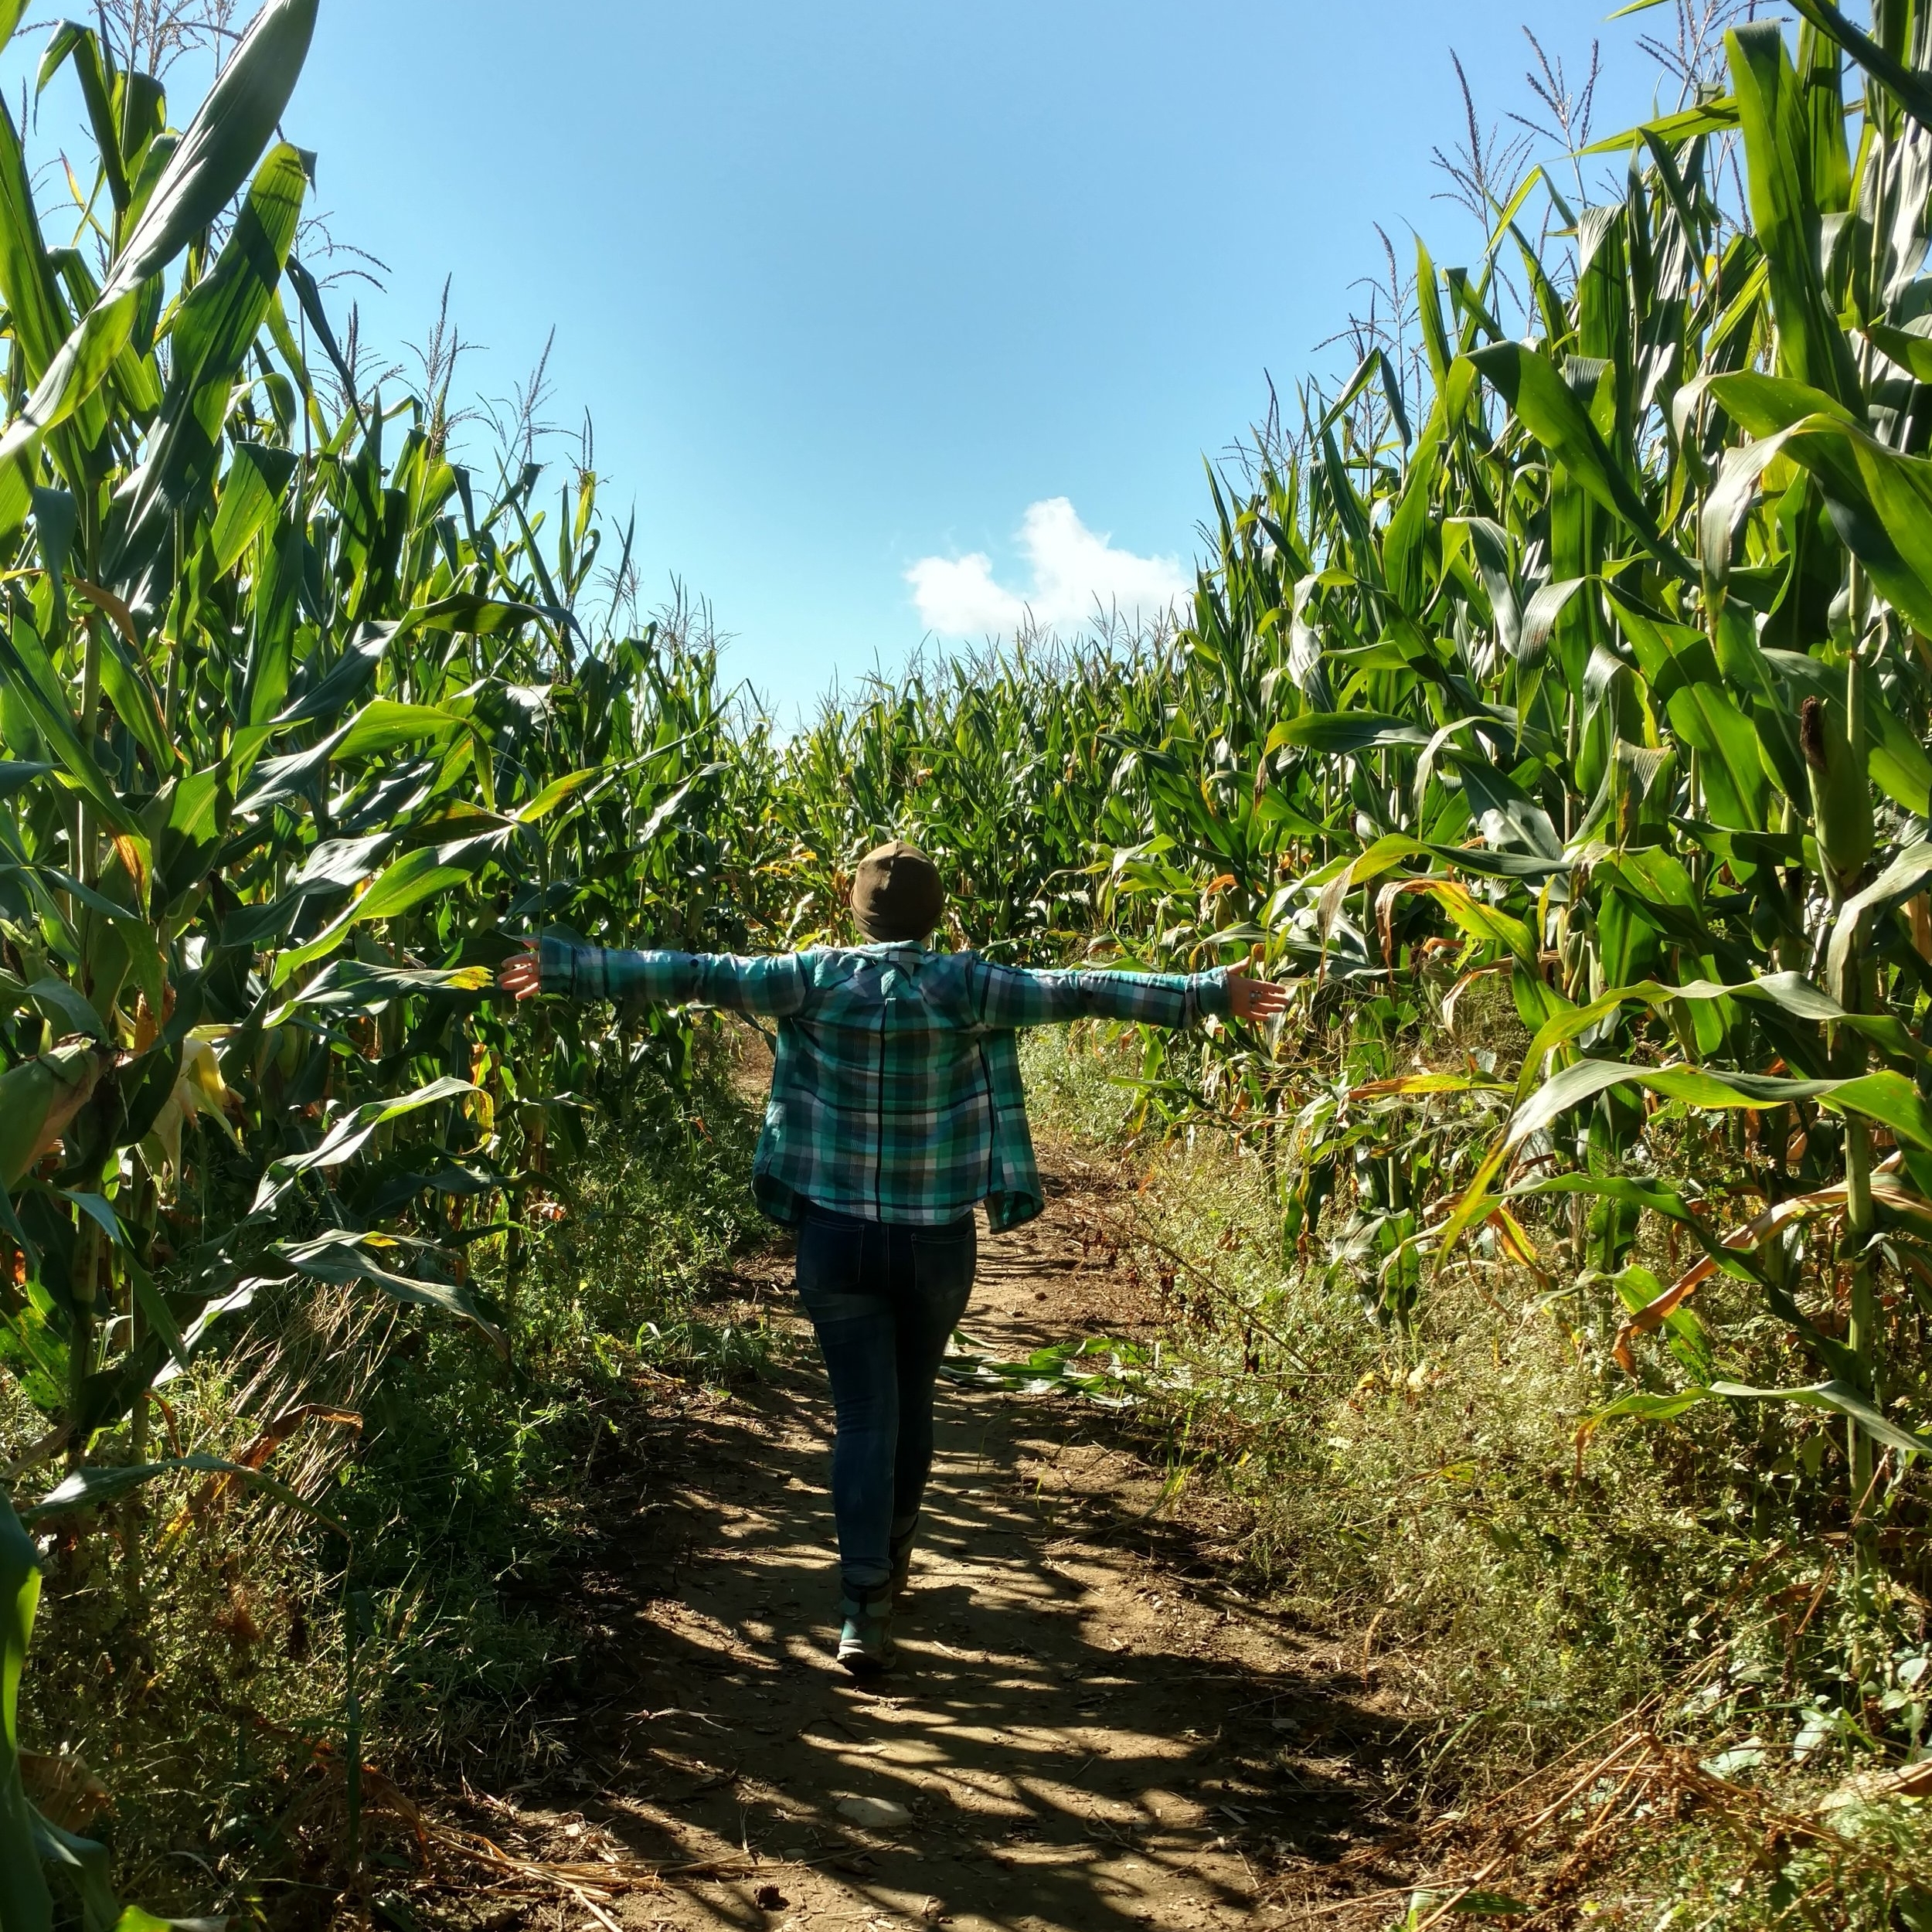  Corn Maze Vermont 